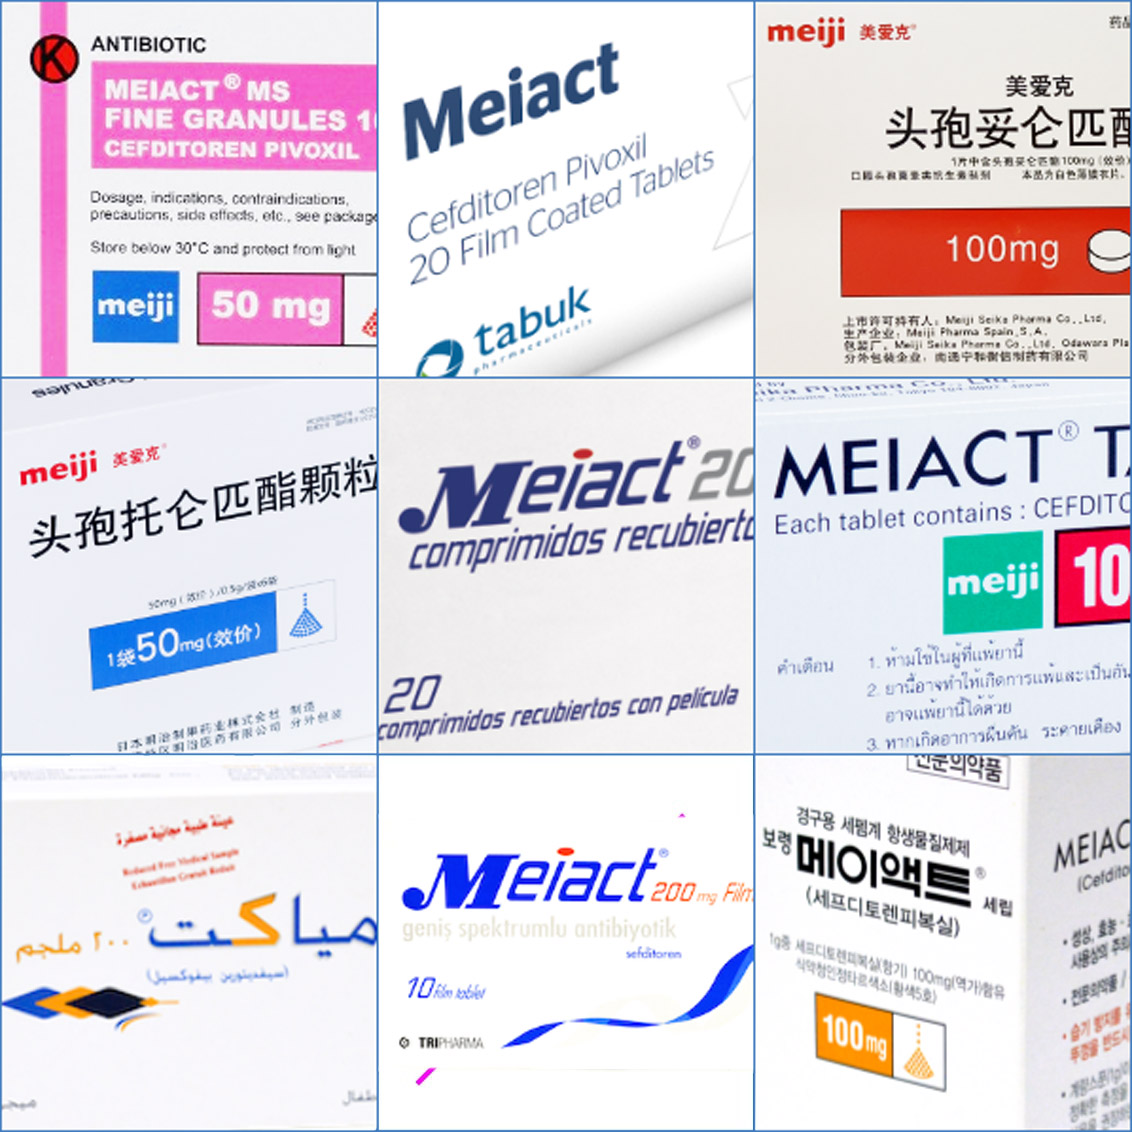 photo of Meiact antibiotic sold around the world